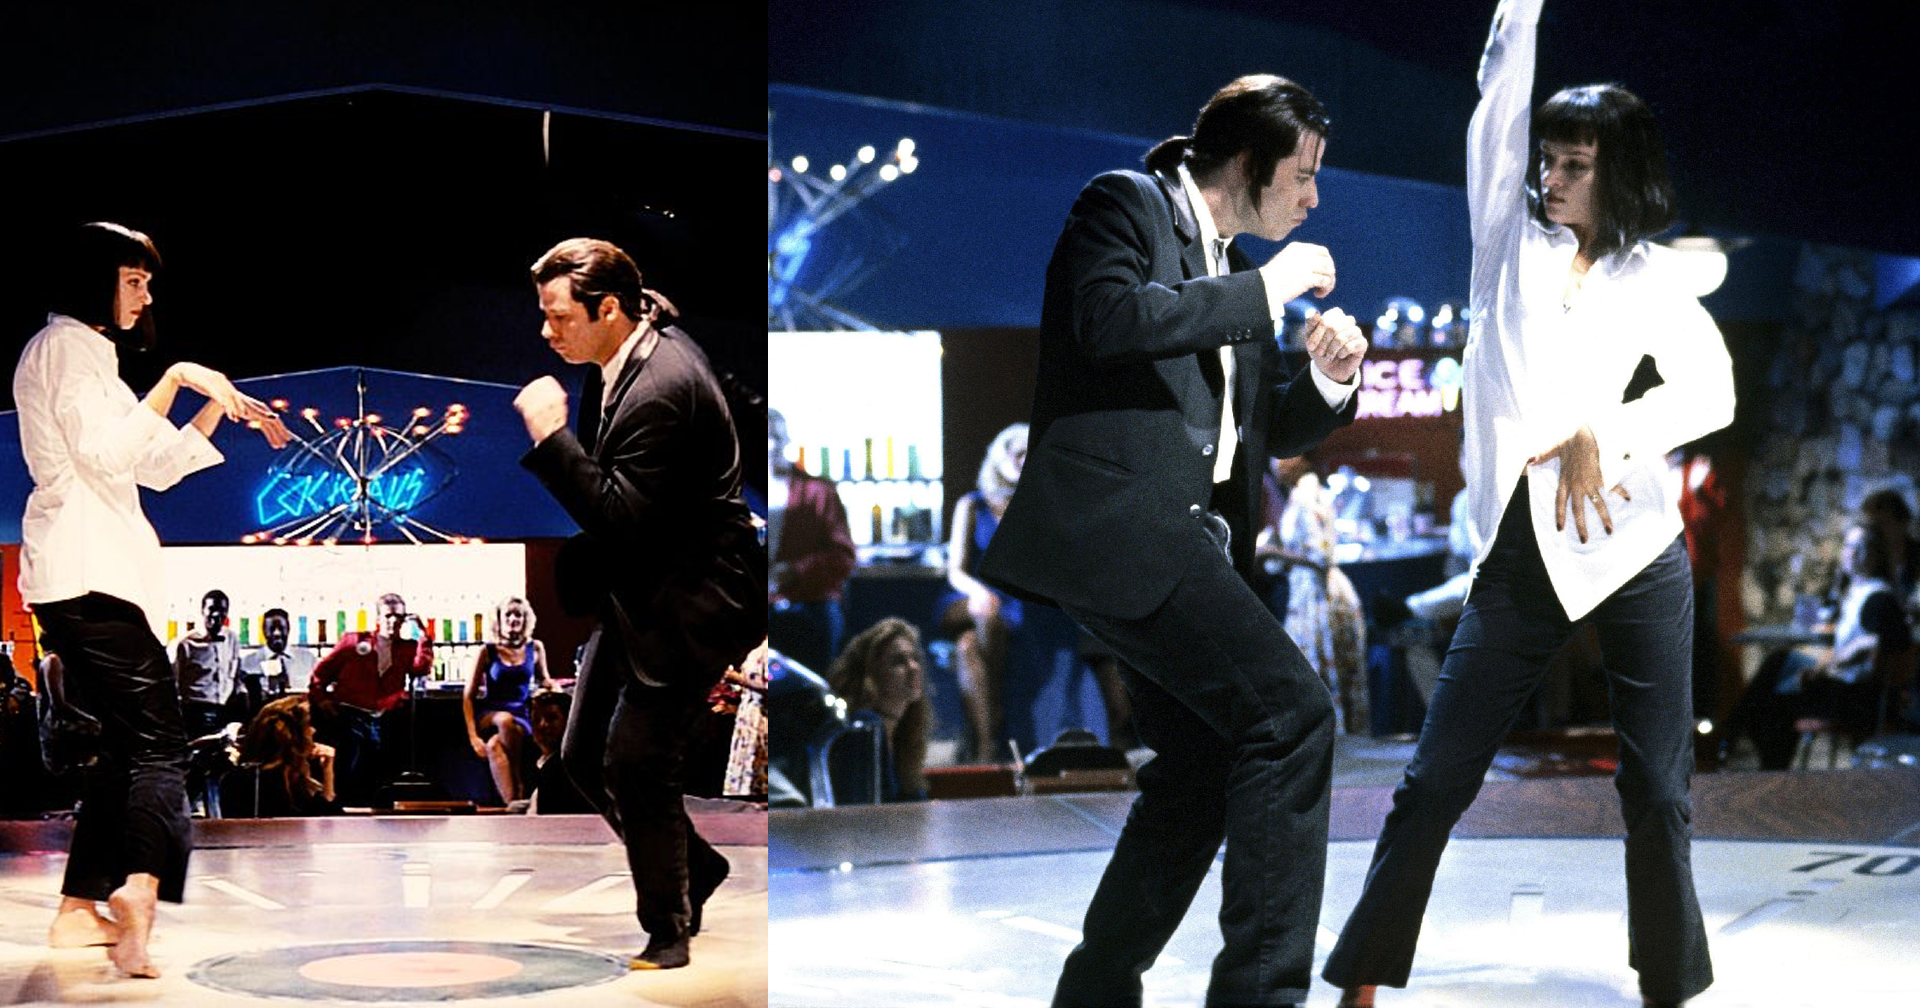 ฉากเต้นที่โลกจำจดในหนัง ‘Pulp Fiction’ มาจากการออกแบบท่าเต้นของจอห์น ทราโวลตา